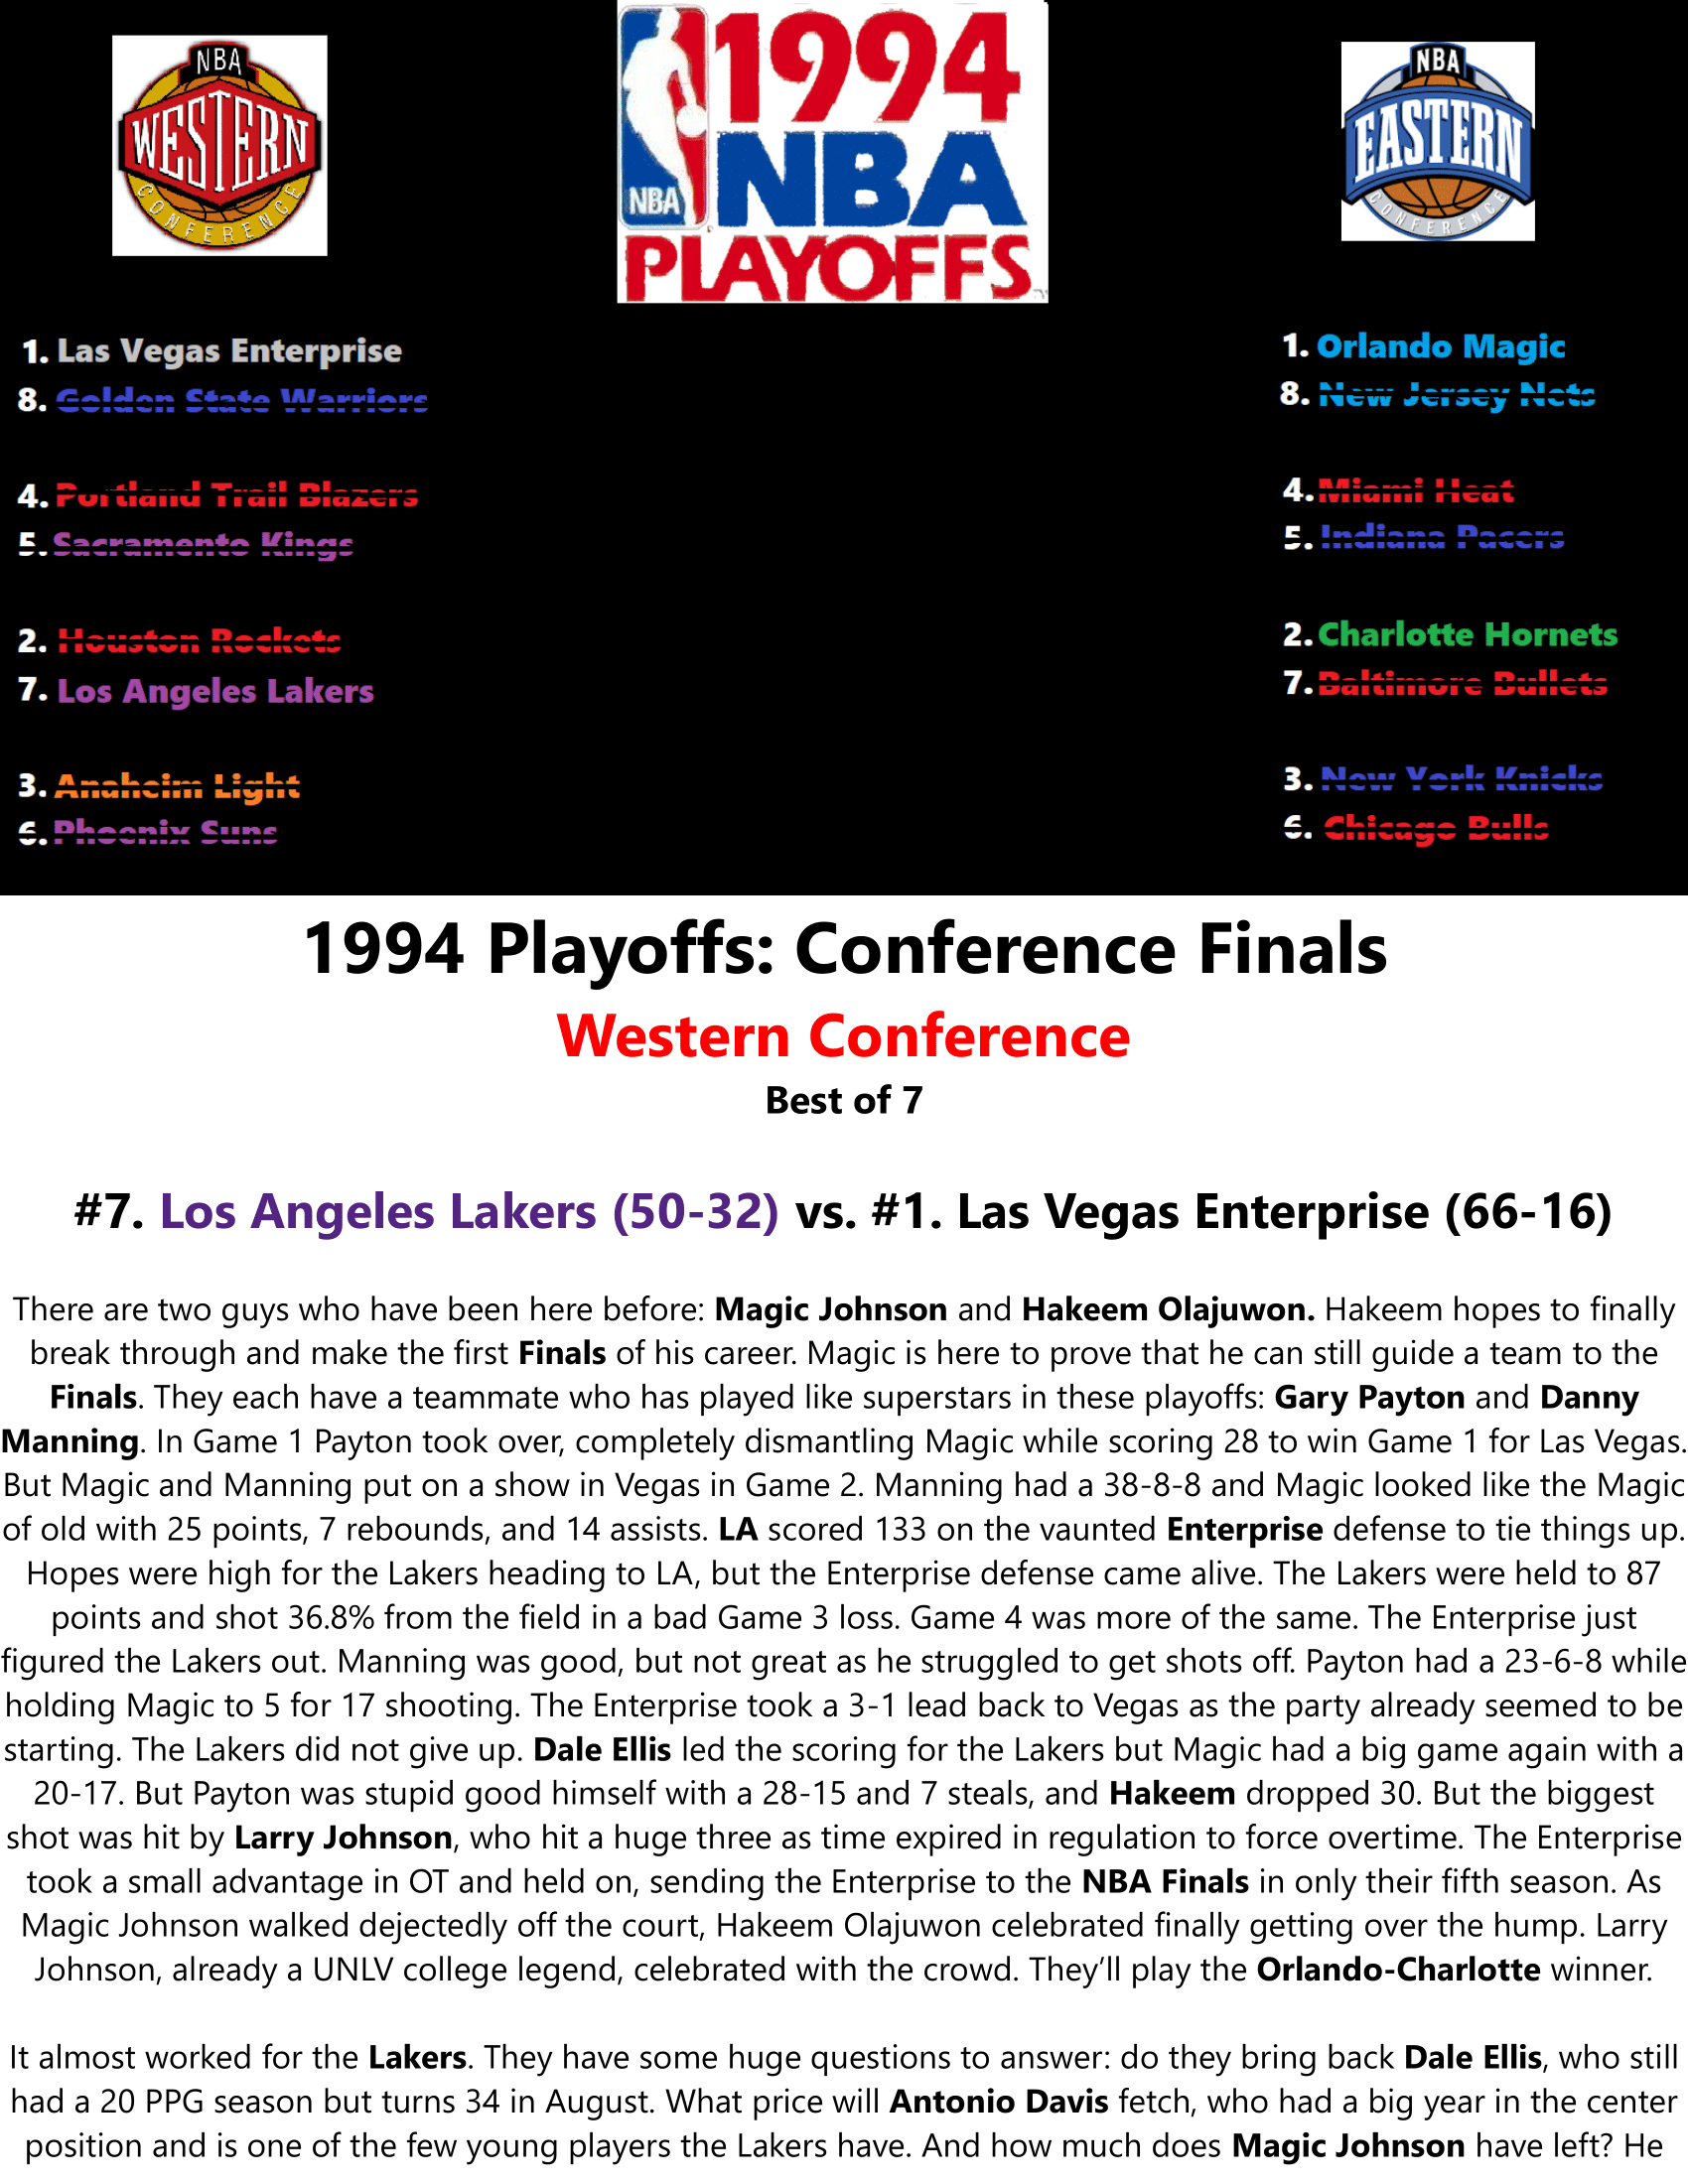 93-94-Part-5-NBA-Playoffs-23.png